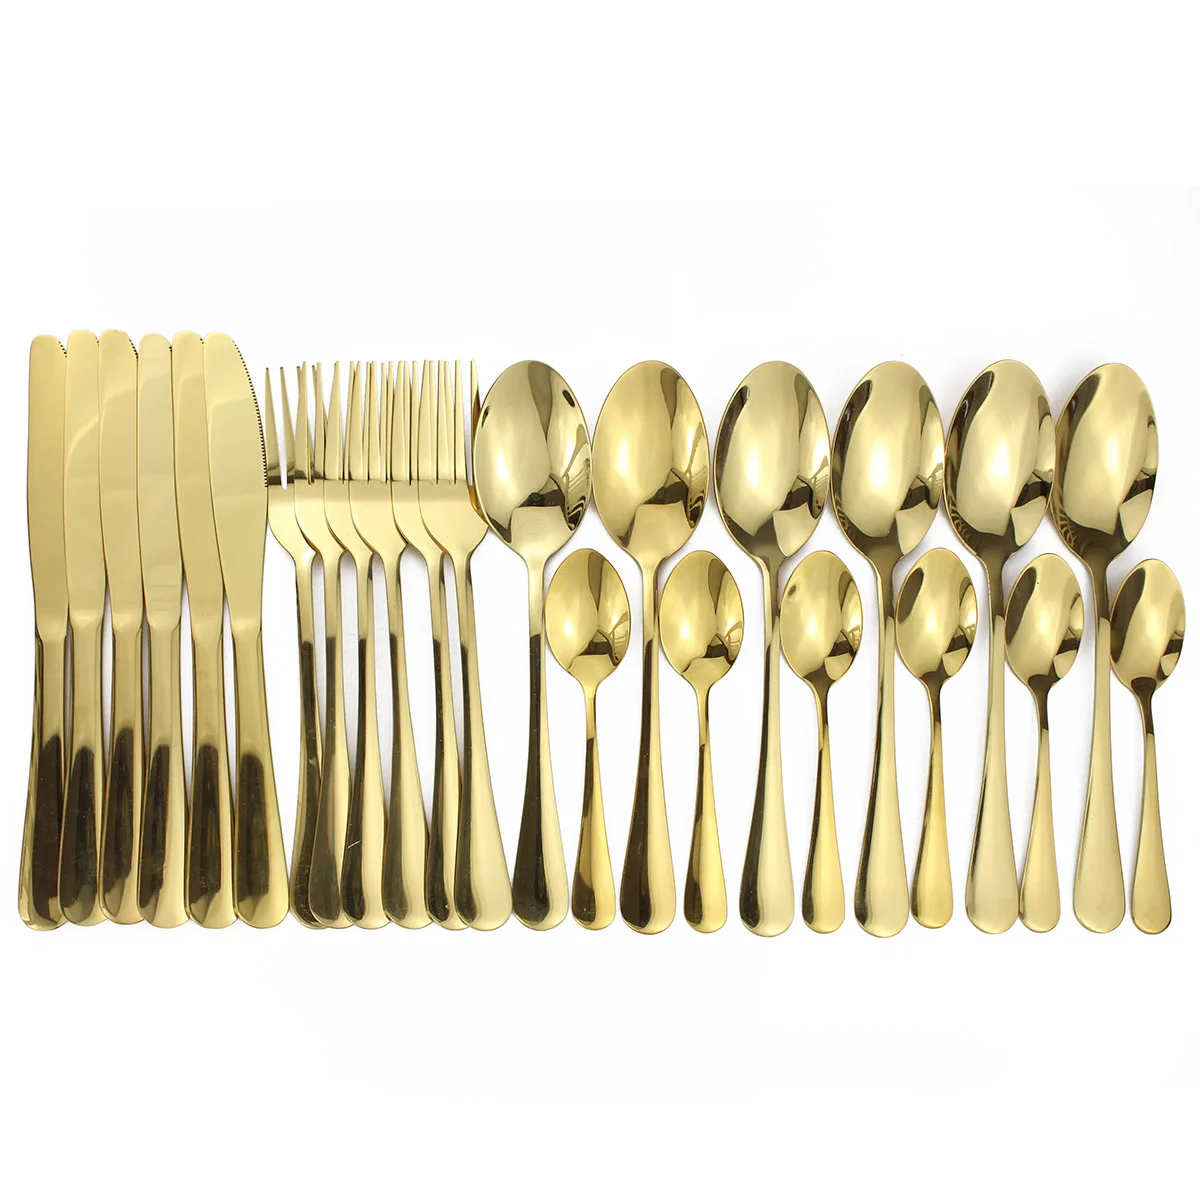 24 шт золотой набор посуды 18/10 нержавеющая сталь набор посуды нож вилка ложка столовые приборы набор посуды для мытья в посудомоечной машине набор столовых приборов - Цвет: Gold